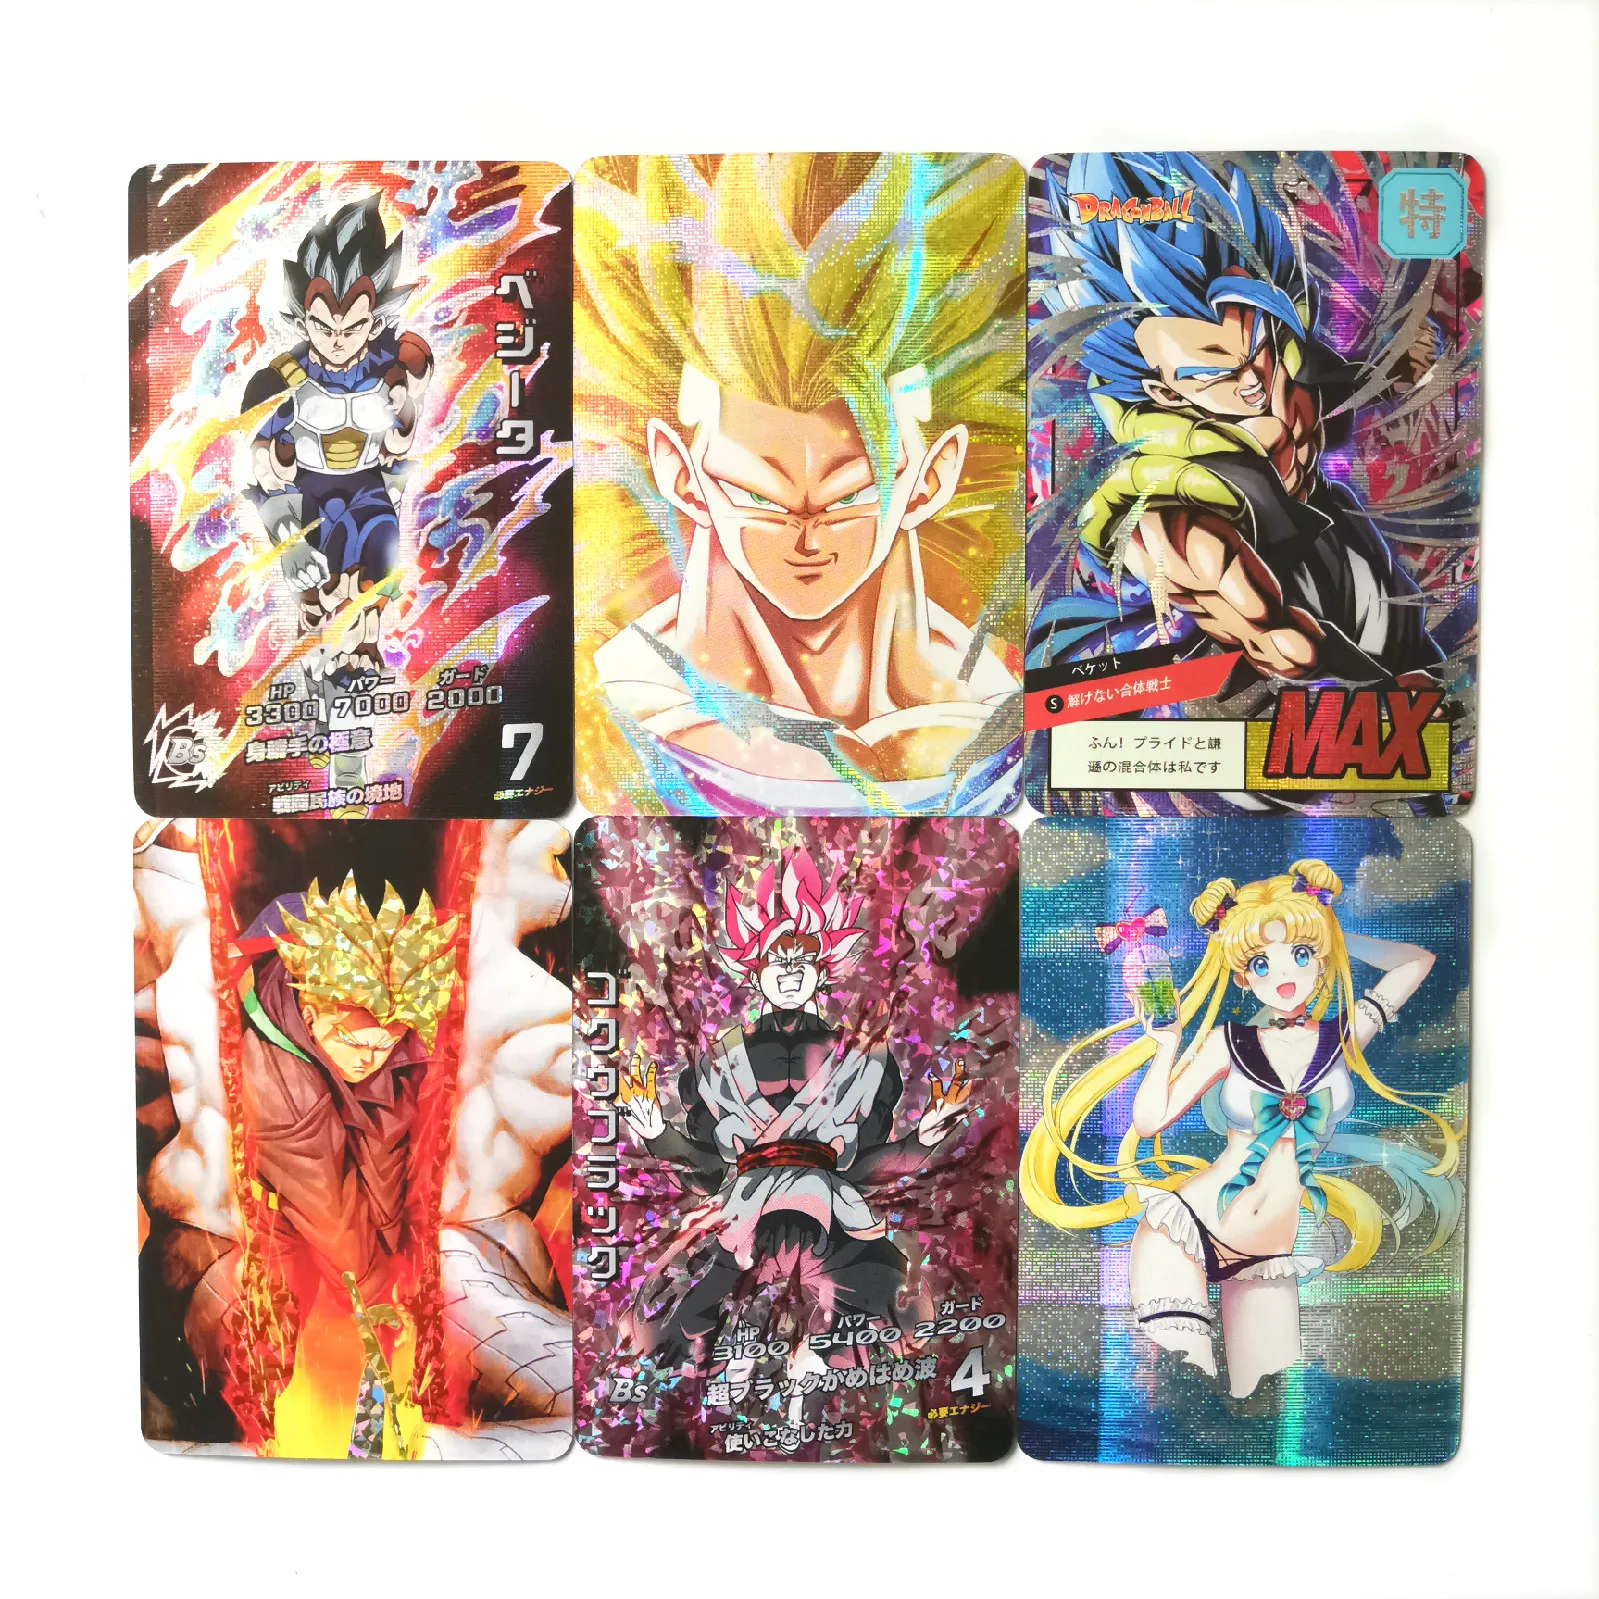 27 стилей супер Dragon Ball Z Сейлор Мун Сейя герои битва карта ультра инстинкт Гоку Вегета игровая коллекция карт